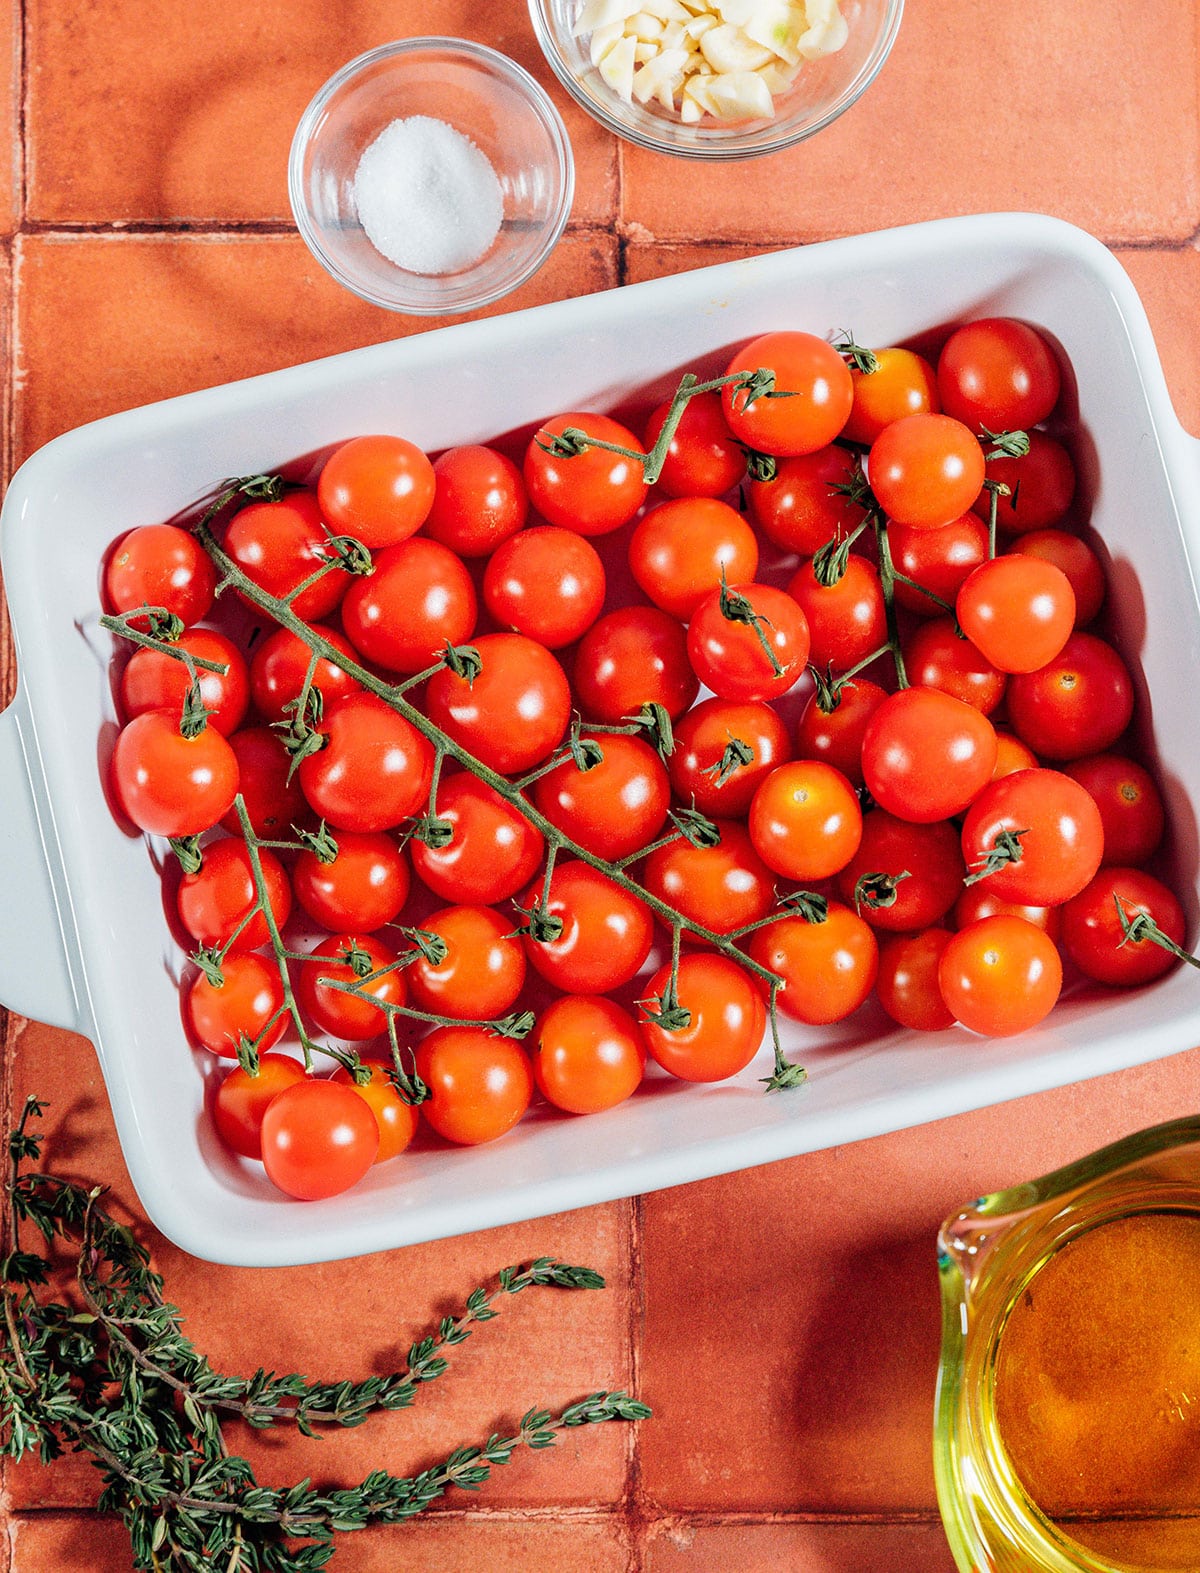 Tomato confit ingredients.